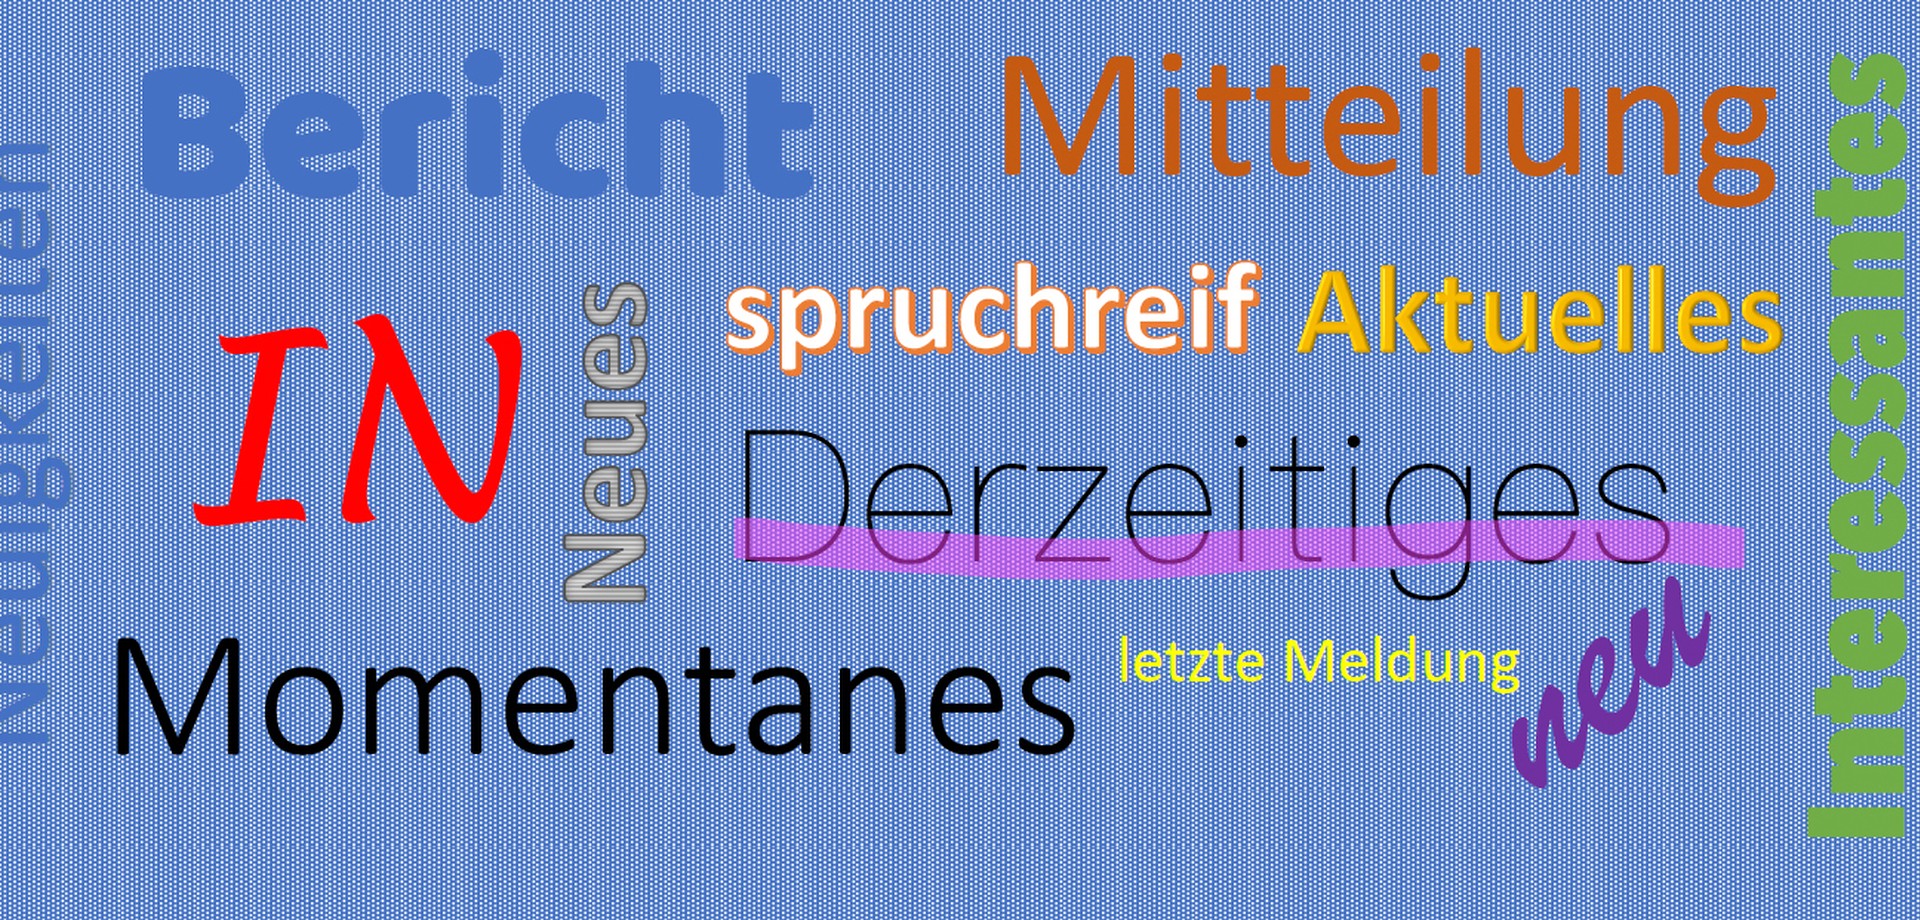 Grafik mit unterschiedlichen Begriffen zum Thema Aktuelles in verschiedenen Farben auf blauem Untergrund dargestellt